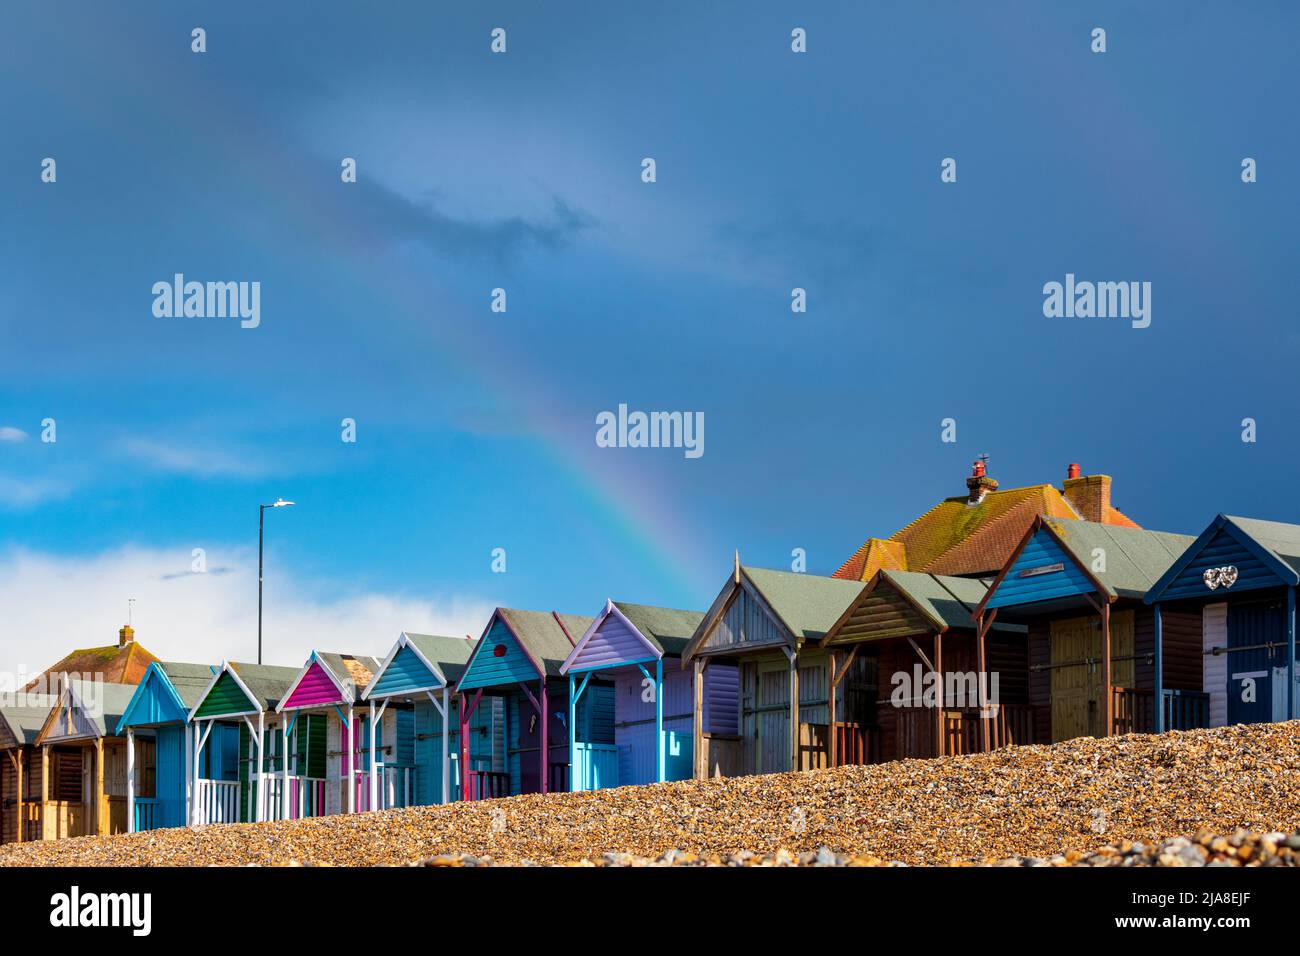 Un arc-en-ciel vu au-dessus d'une rangée de cabanes traditionnelles britanniques de plage, un emplacement récent vu dans le drame romantique à l'adolescence de Netflix, à l'arrivée, « Heartbuck ». Banque D'Images